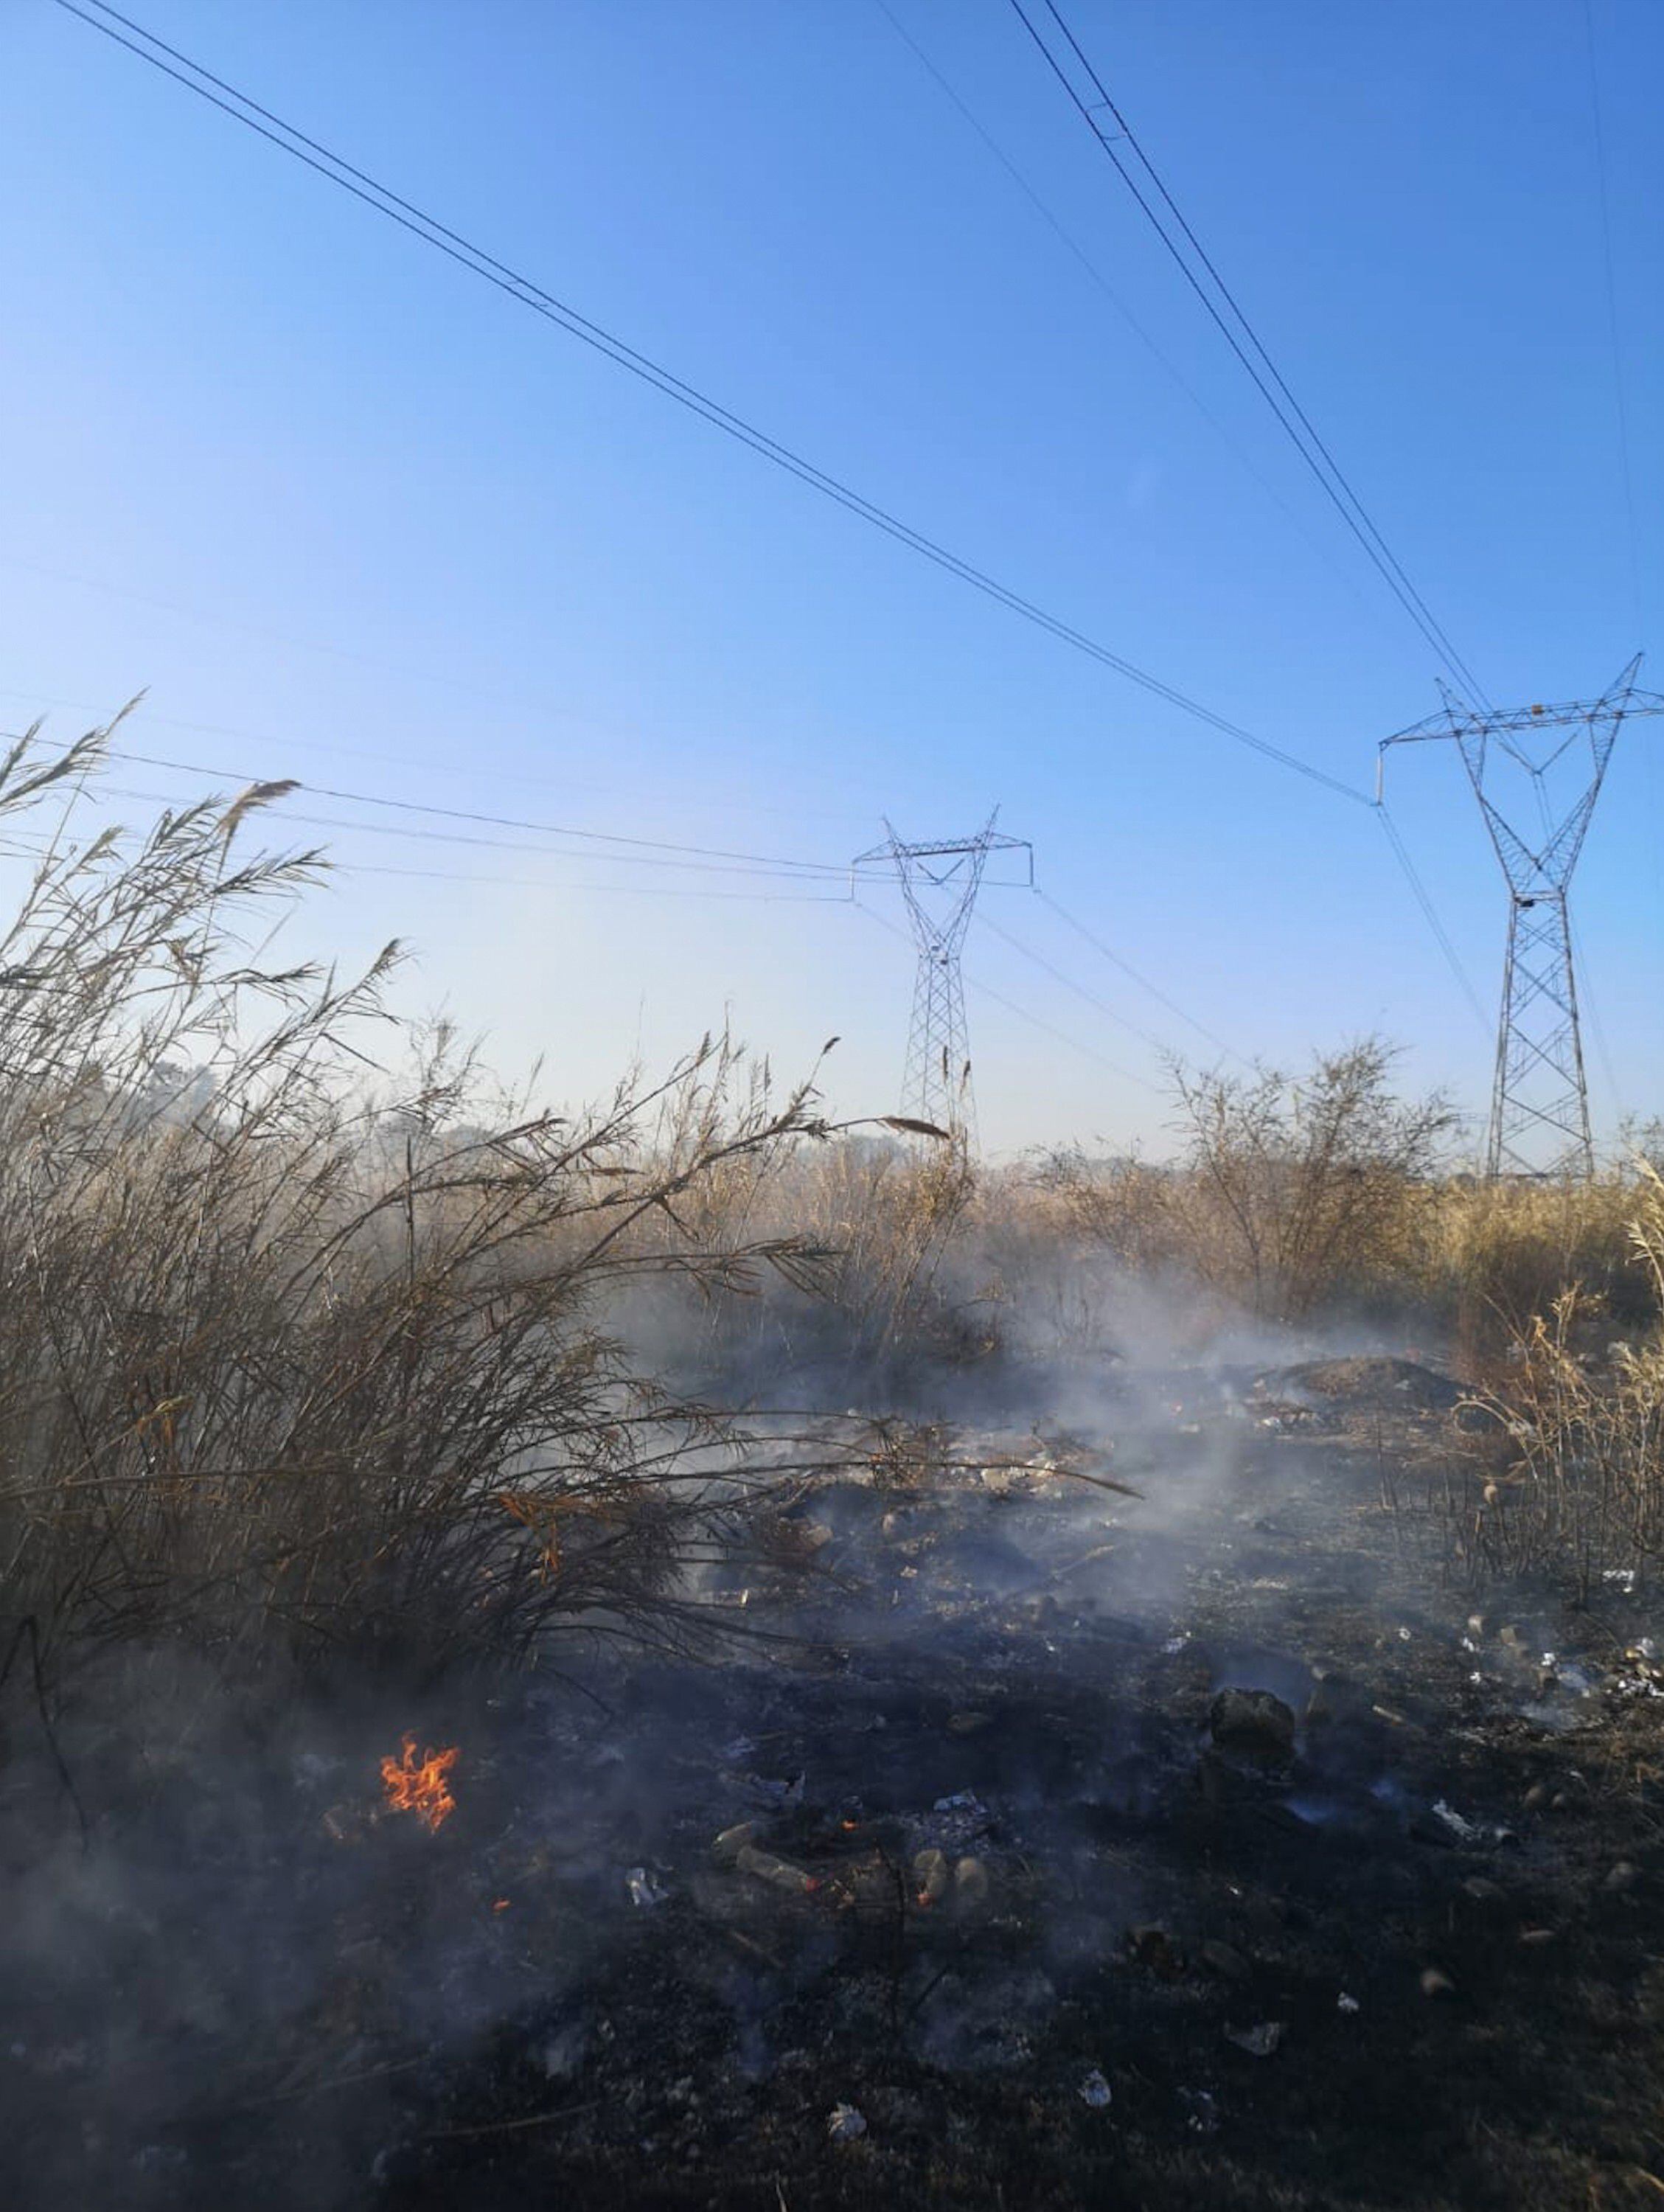 Imagen difundida por la CFE del incendio en Tamaulipas que supuestamente provocó el apagón.